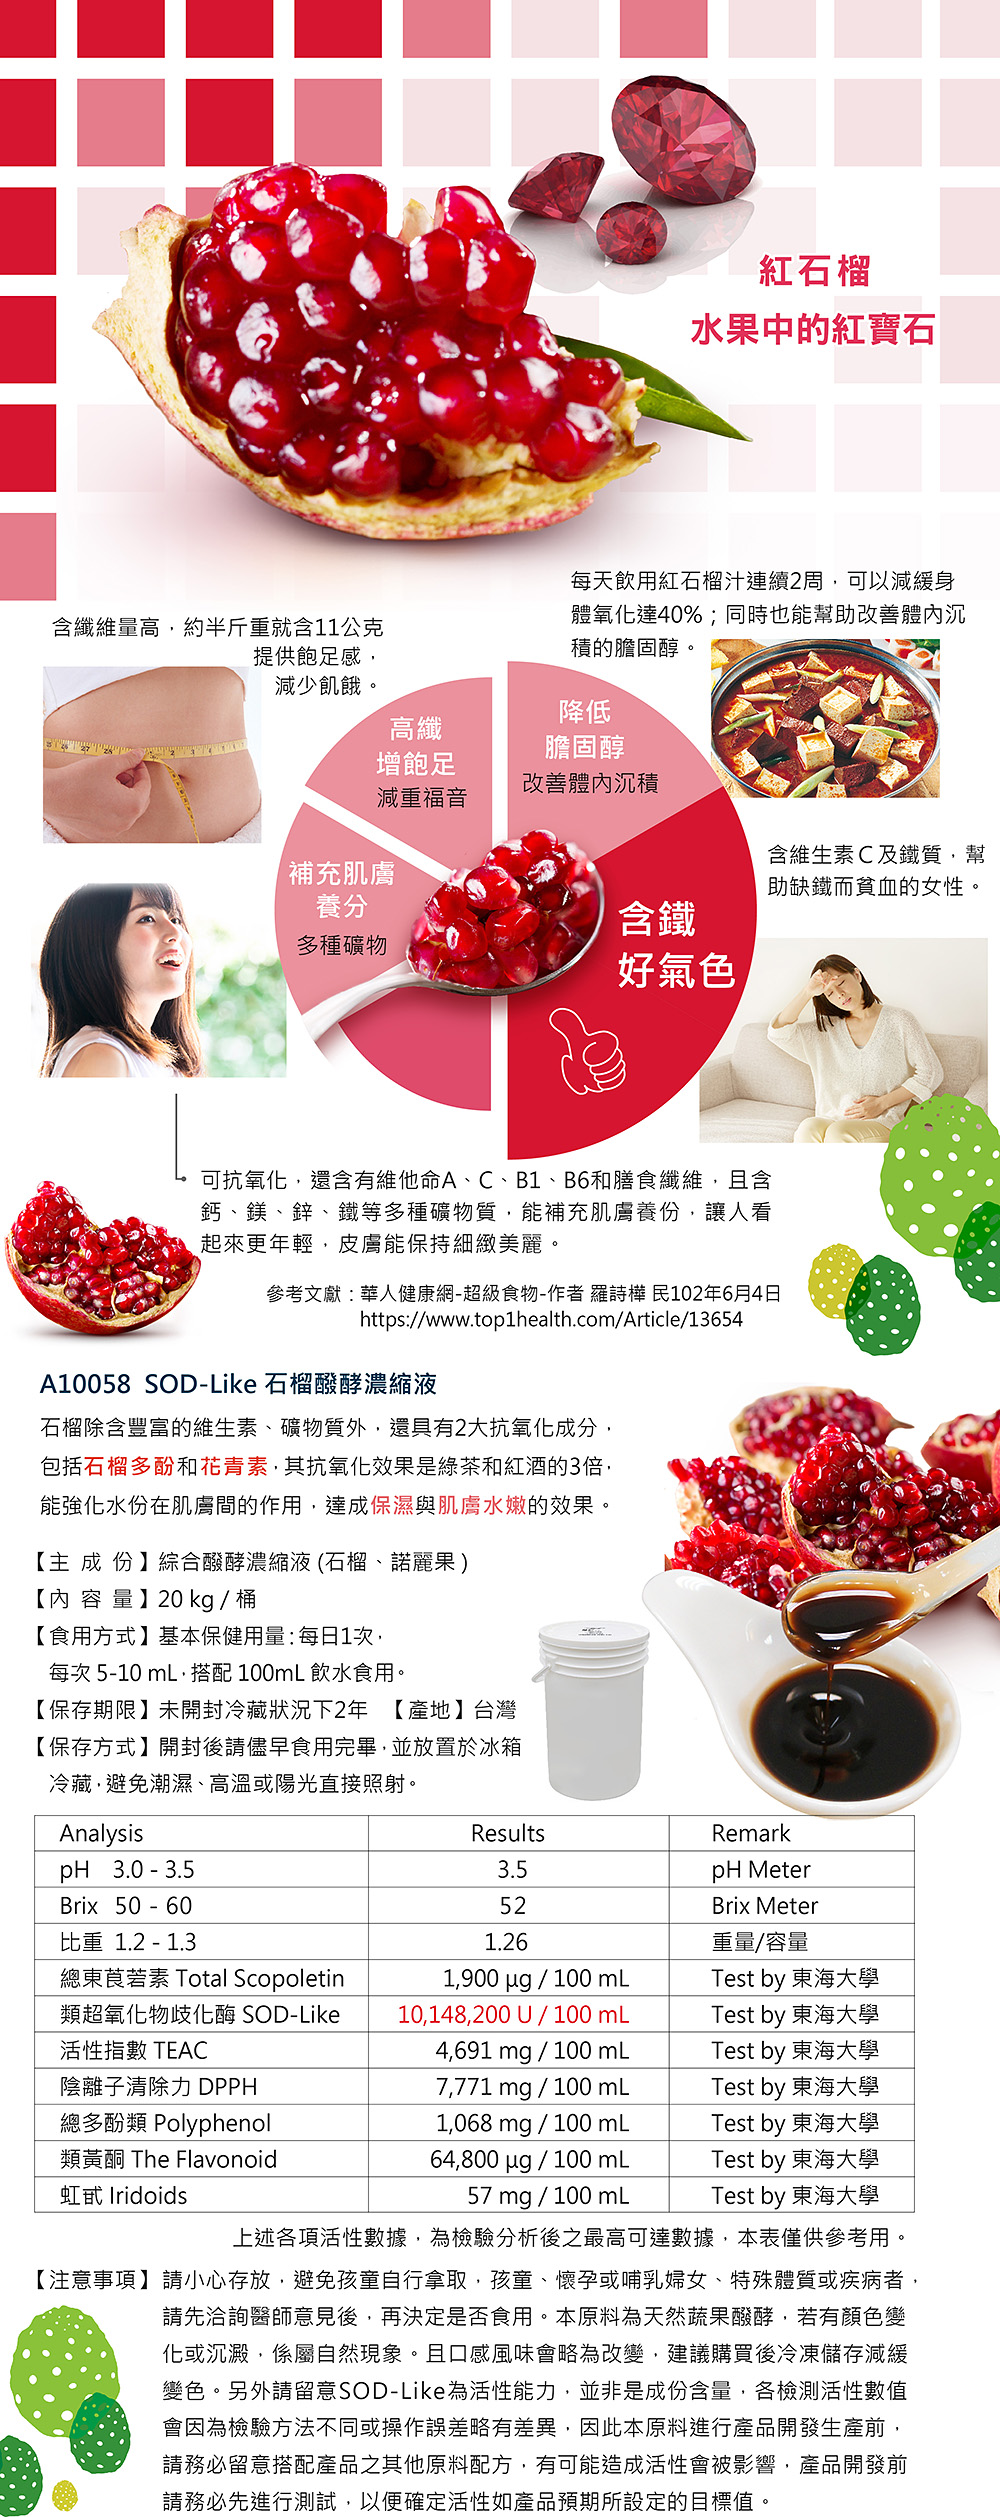 4.石榴液_pomegranate juice.jpg